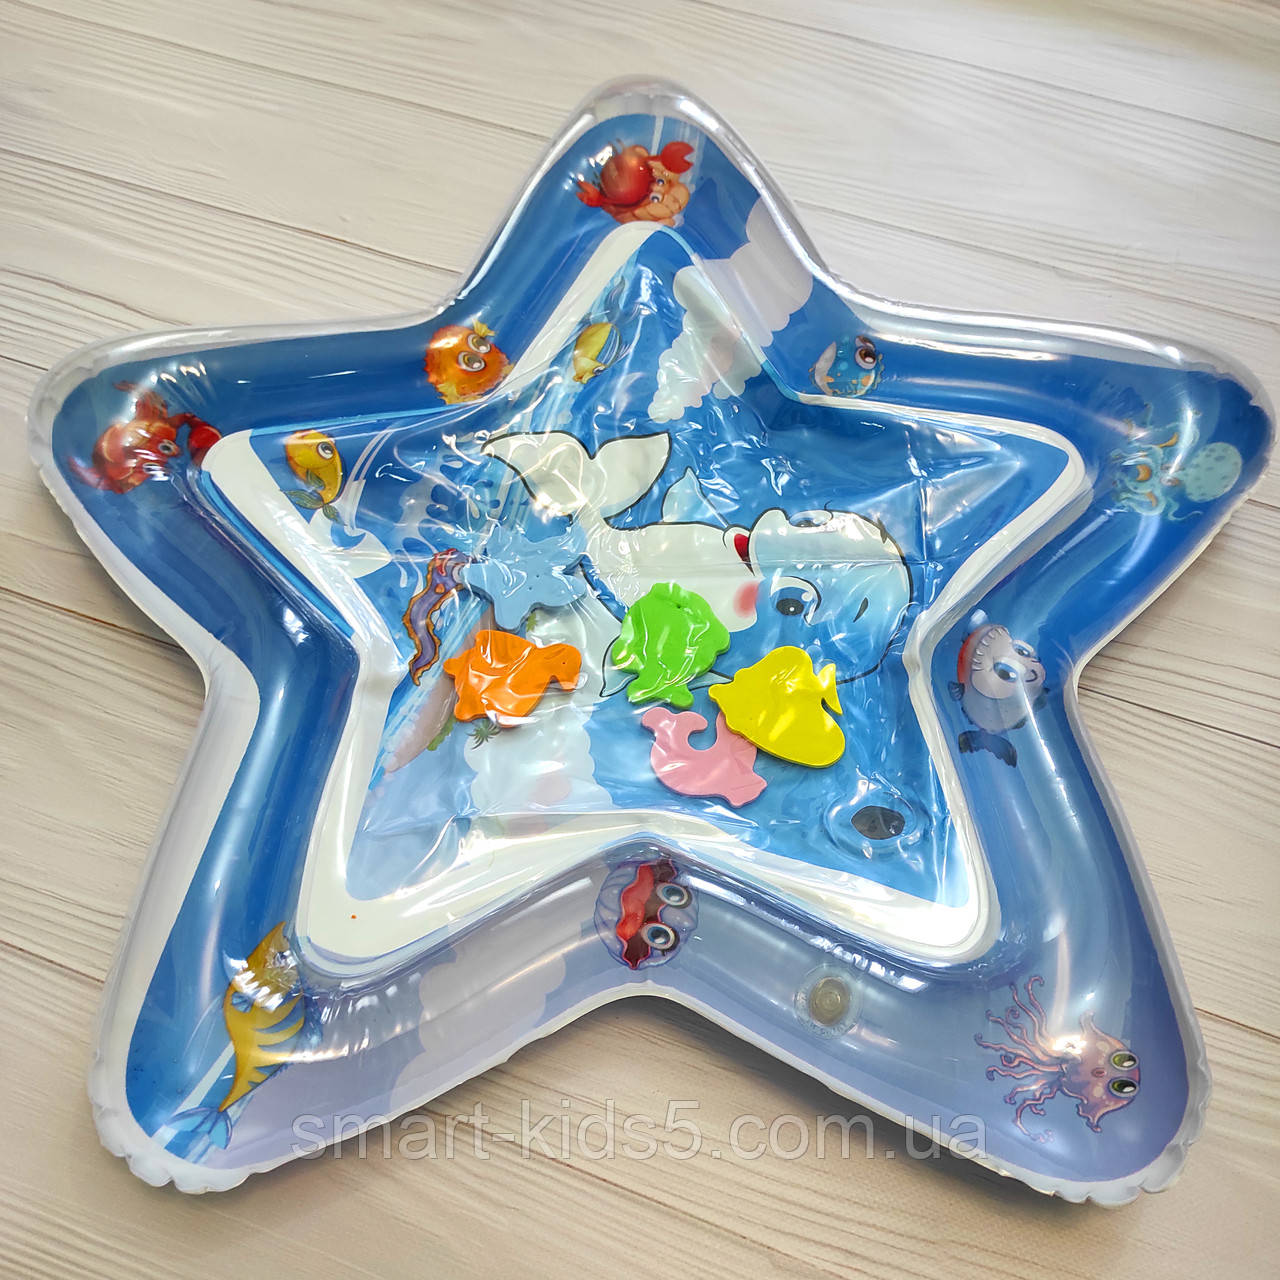 Водяний килимок надувний для малюків, ігровий акваковрик з рибками